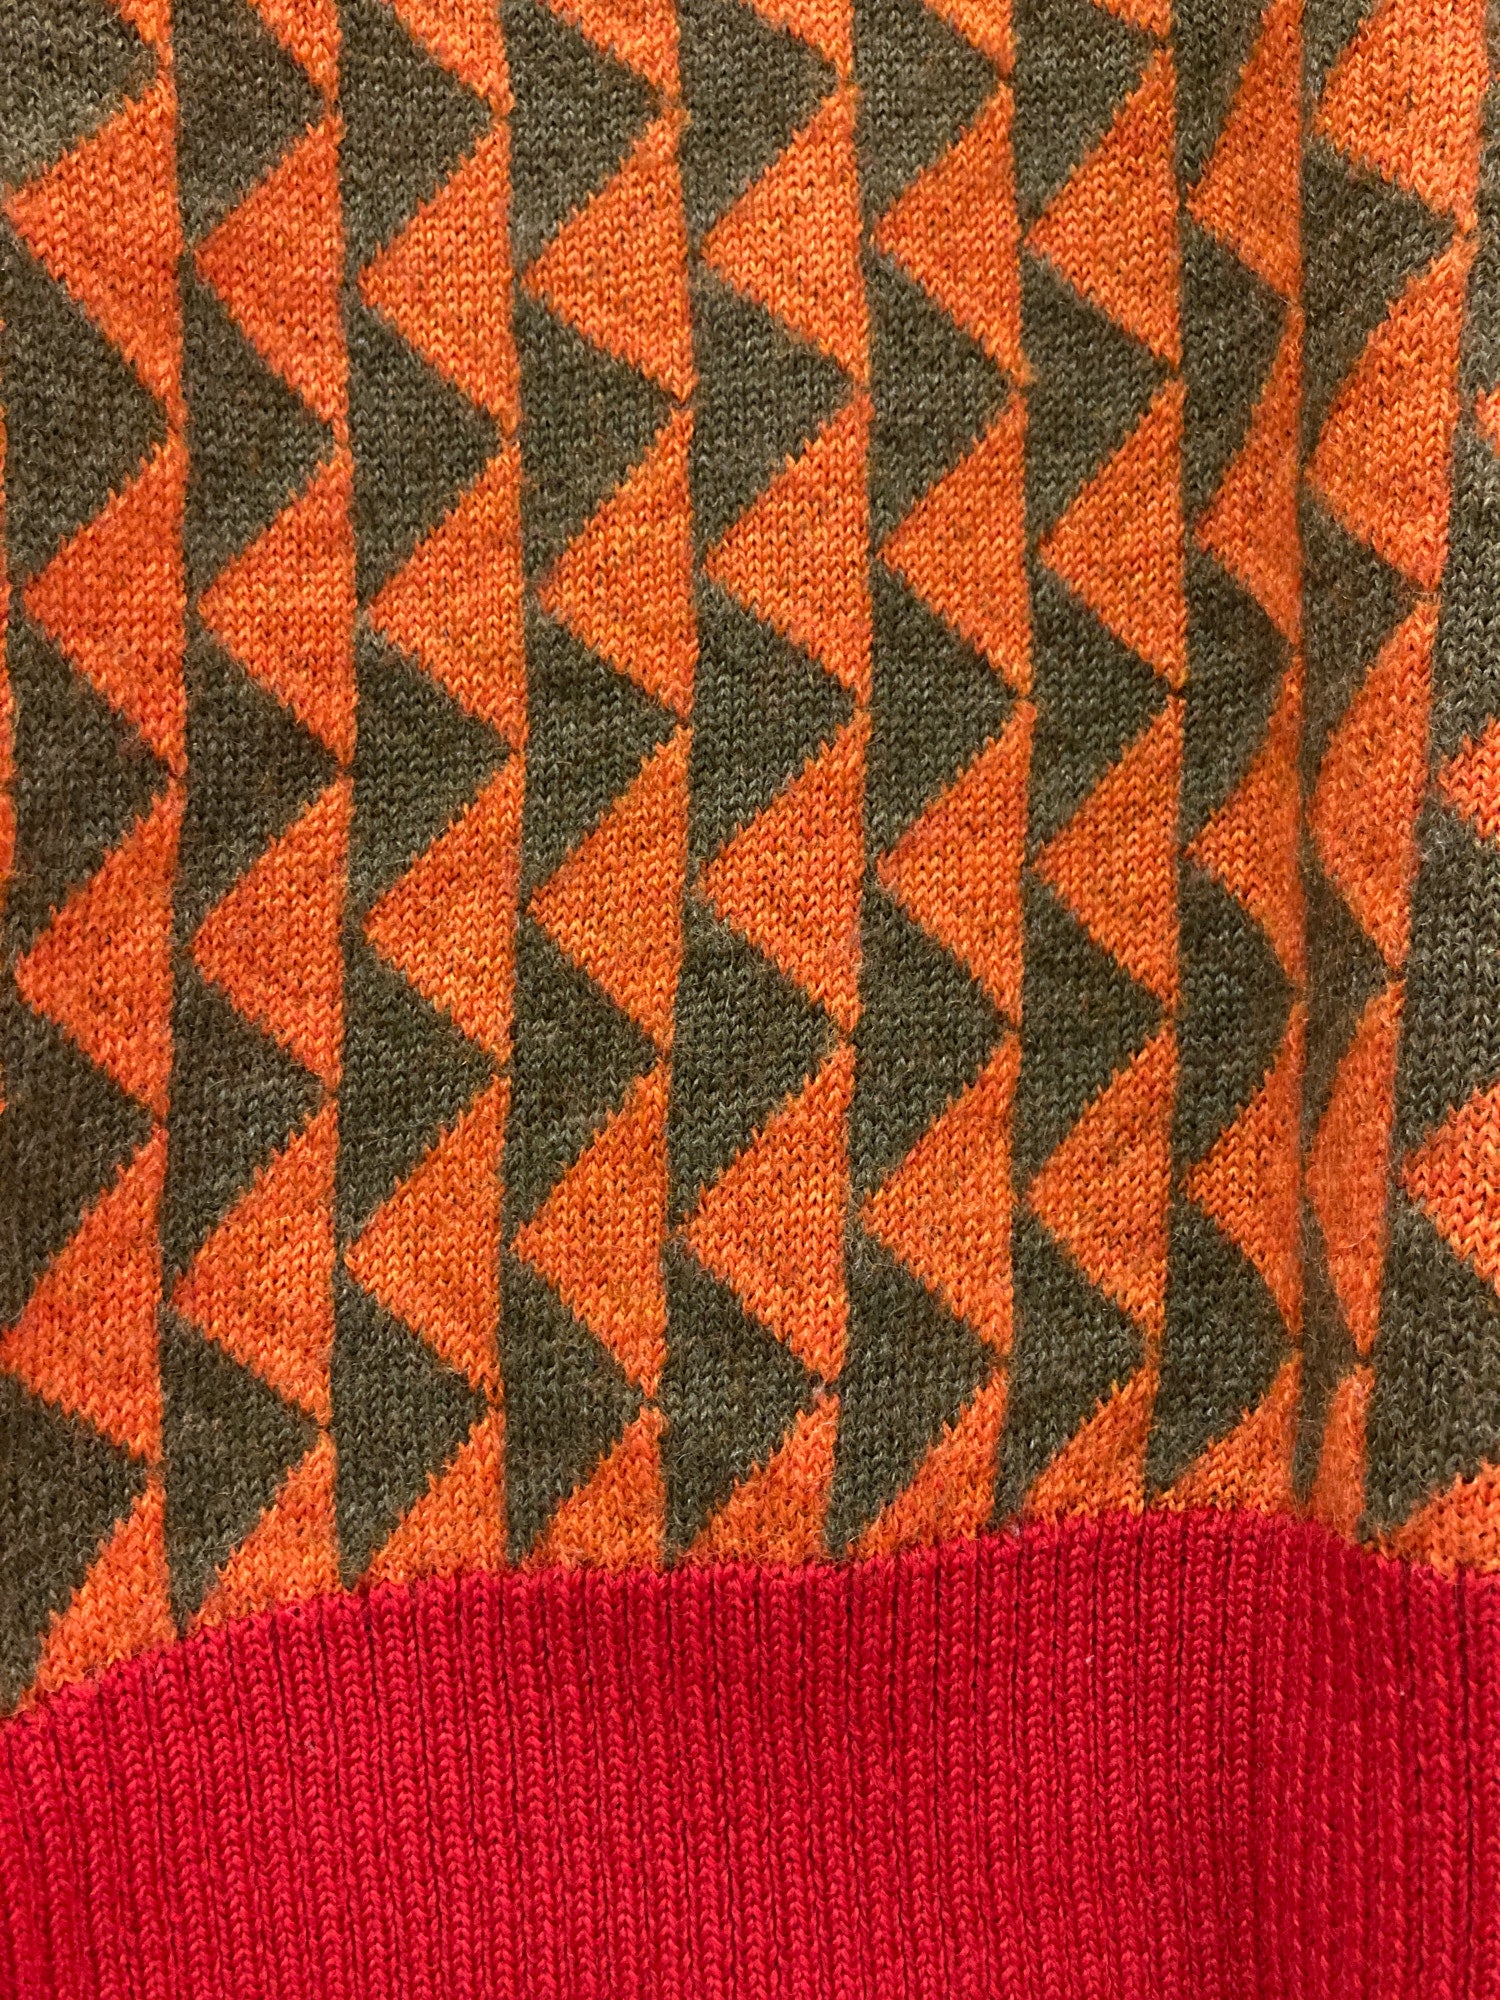 Paul Smith 1990s orange green wool triangle pattern turtleneck jumper - M